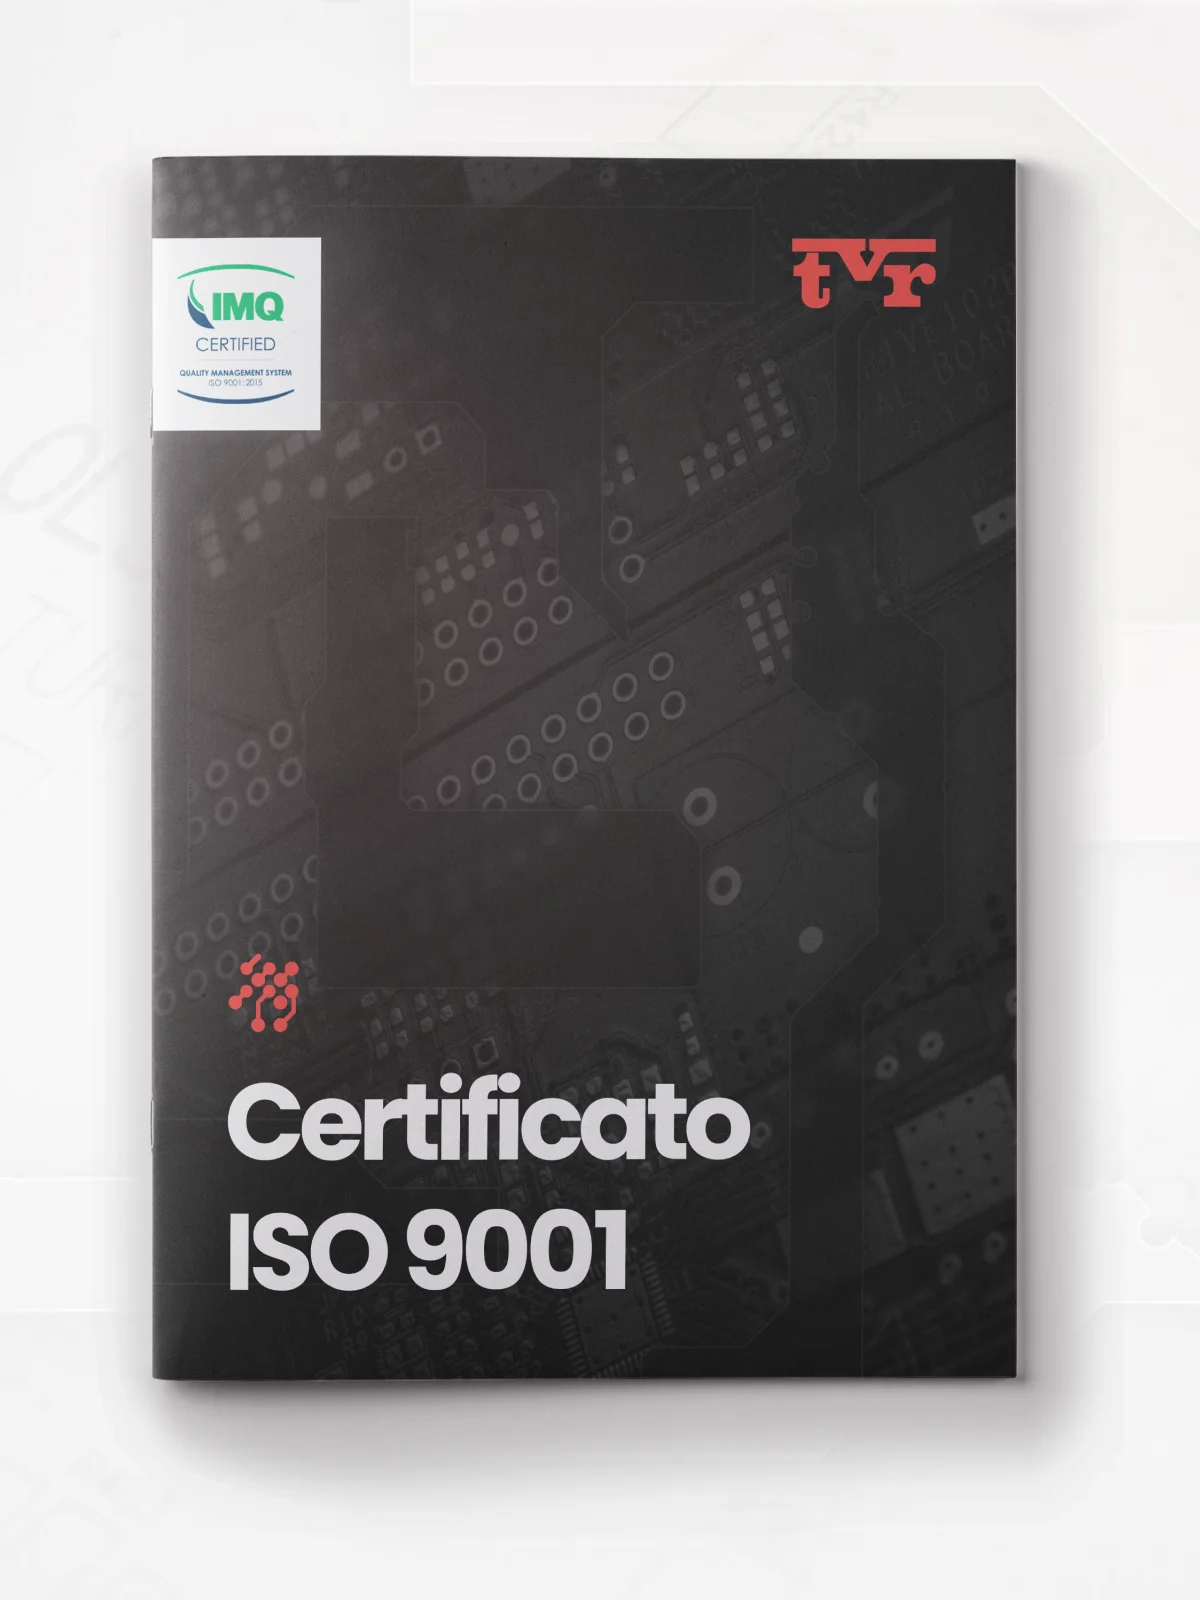 anteprima-documento-pdf-certificato-iso-9001-tvr-circuiti-stampati